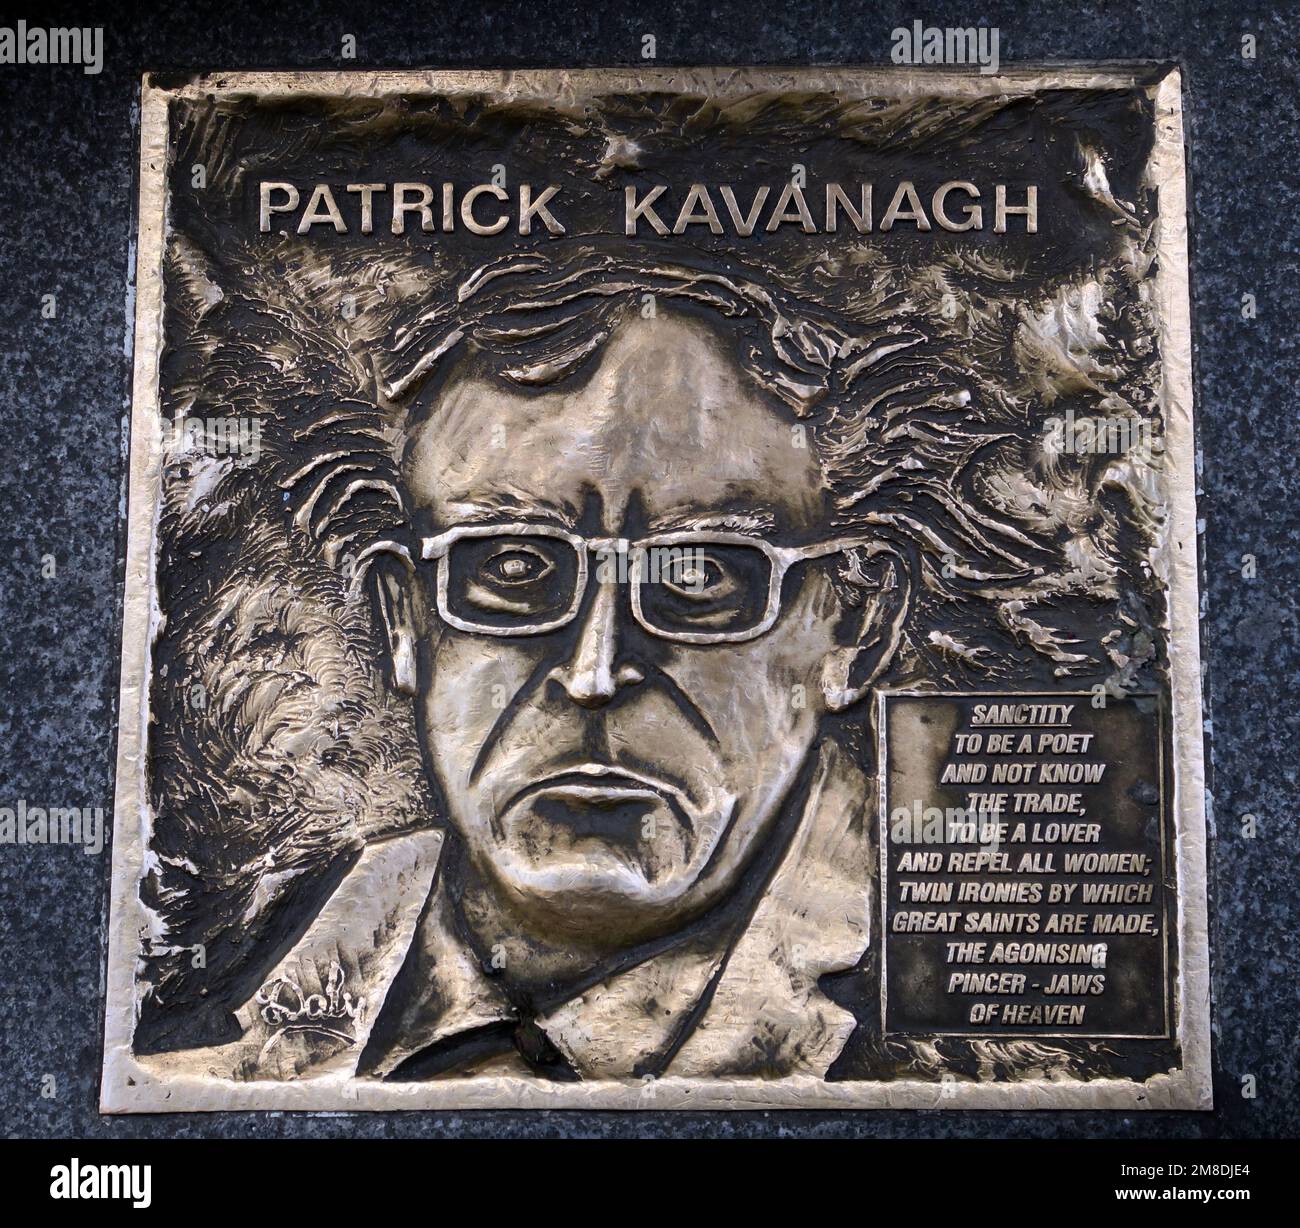 Plaque de bronze de Patrick Kavanagh Poet, Fleet St, Temple Bar, Dublin 2, D02 NX25, Eire, Irlande Banque D'Images